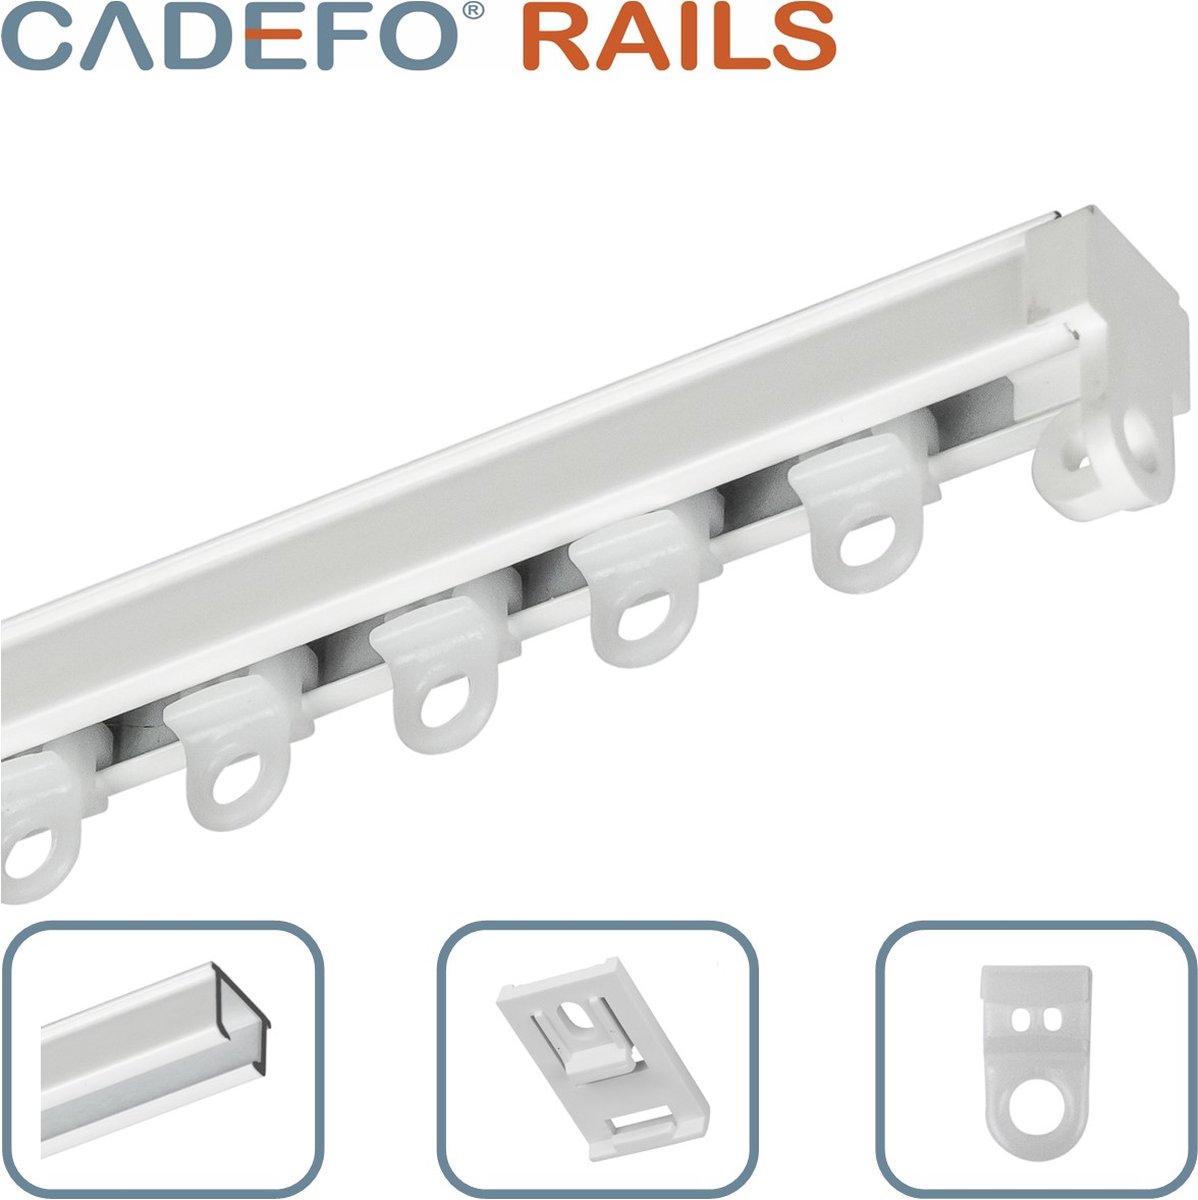 CADEFO RAILS (401 - 450 cm) Gordijnrails - Compleet op maat! - UIT 1 STUK - Leverbaar tot 6 meter - Plafondbevestiging - Lengte 411 cm